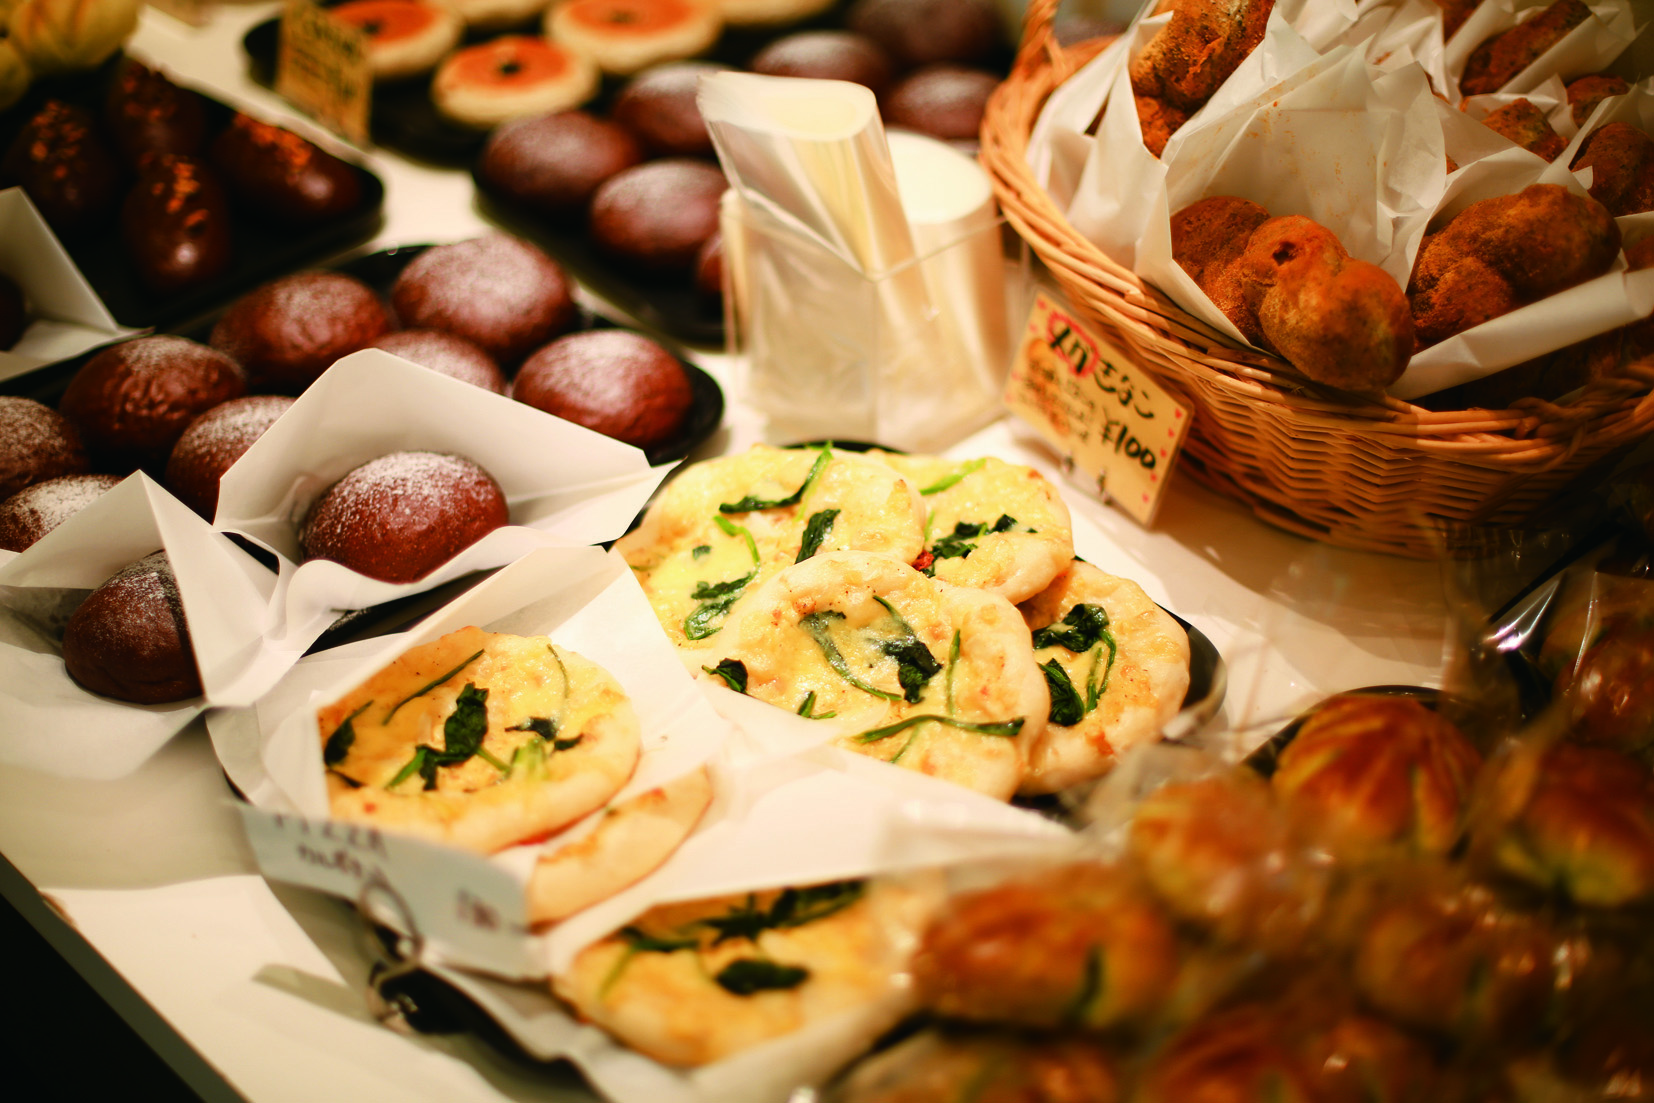 須磨キャンパスカフェテリア地下のベーカリーカフェマーベルで販売されているパンです